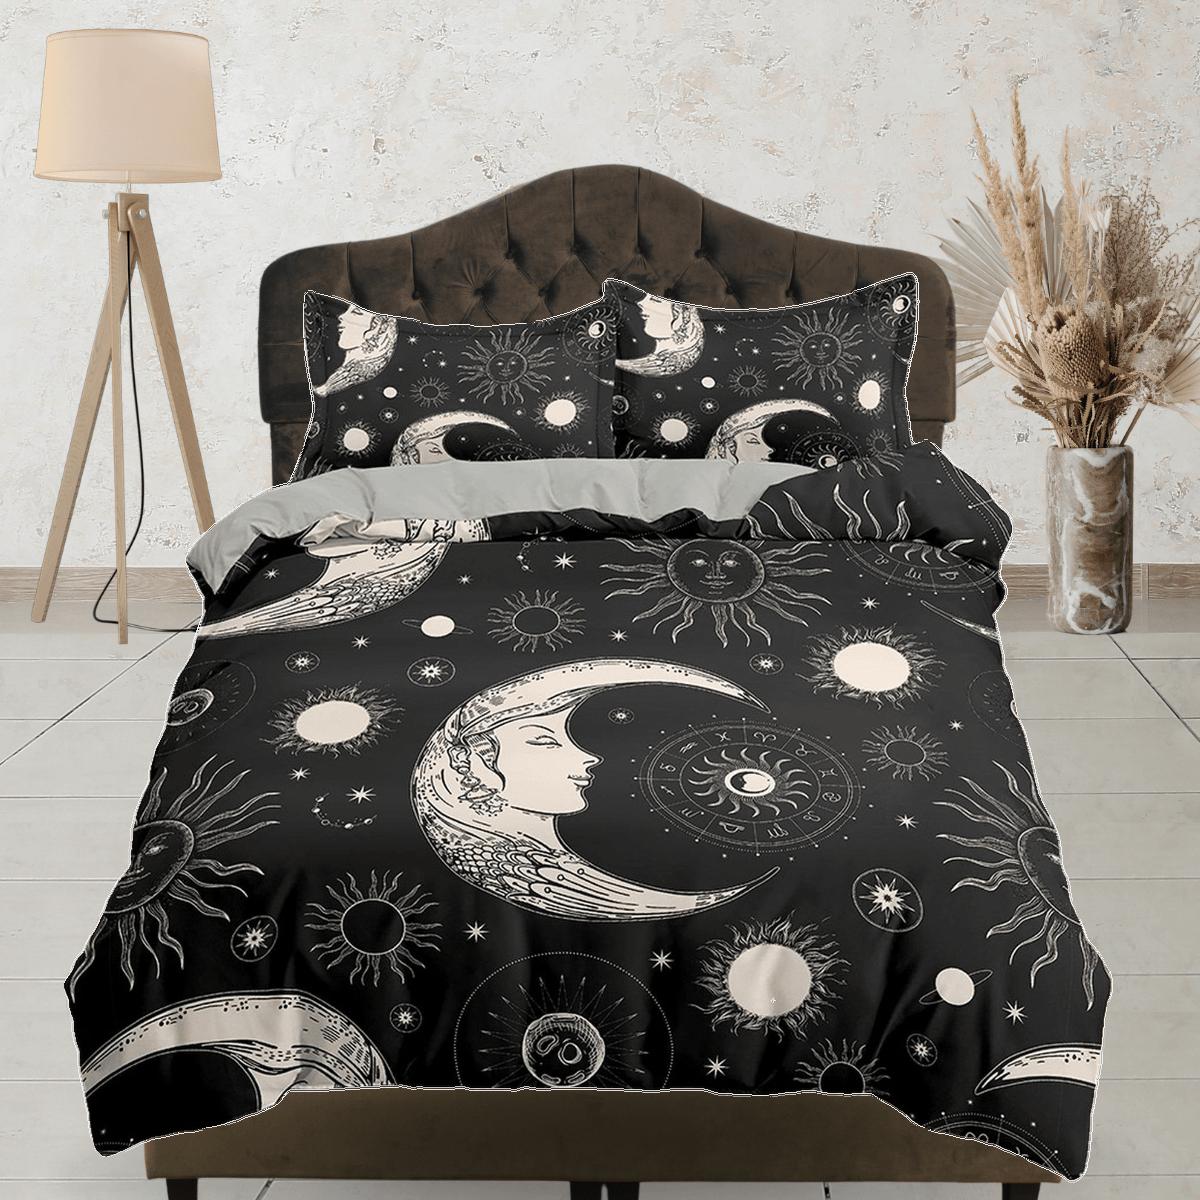 daintyduvet Celestial black crescent moon bedding, witchy decor dorm bedding, aesthetic duvet, boho bedding set full king queen, astrology gift gothic